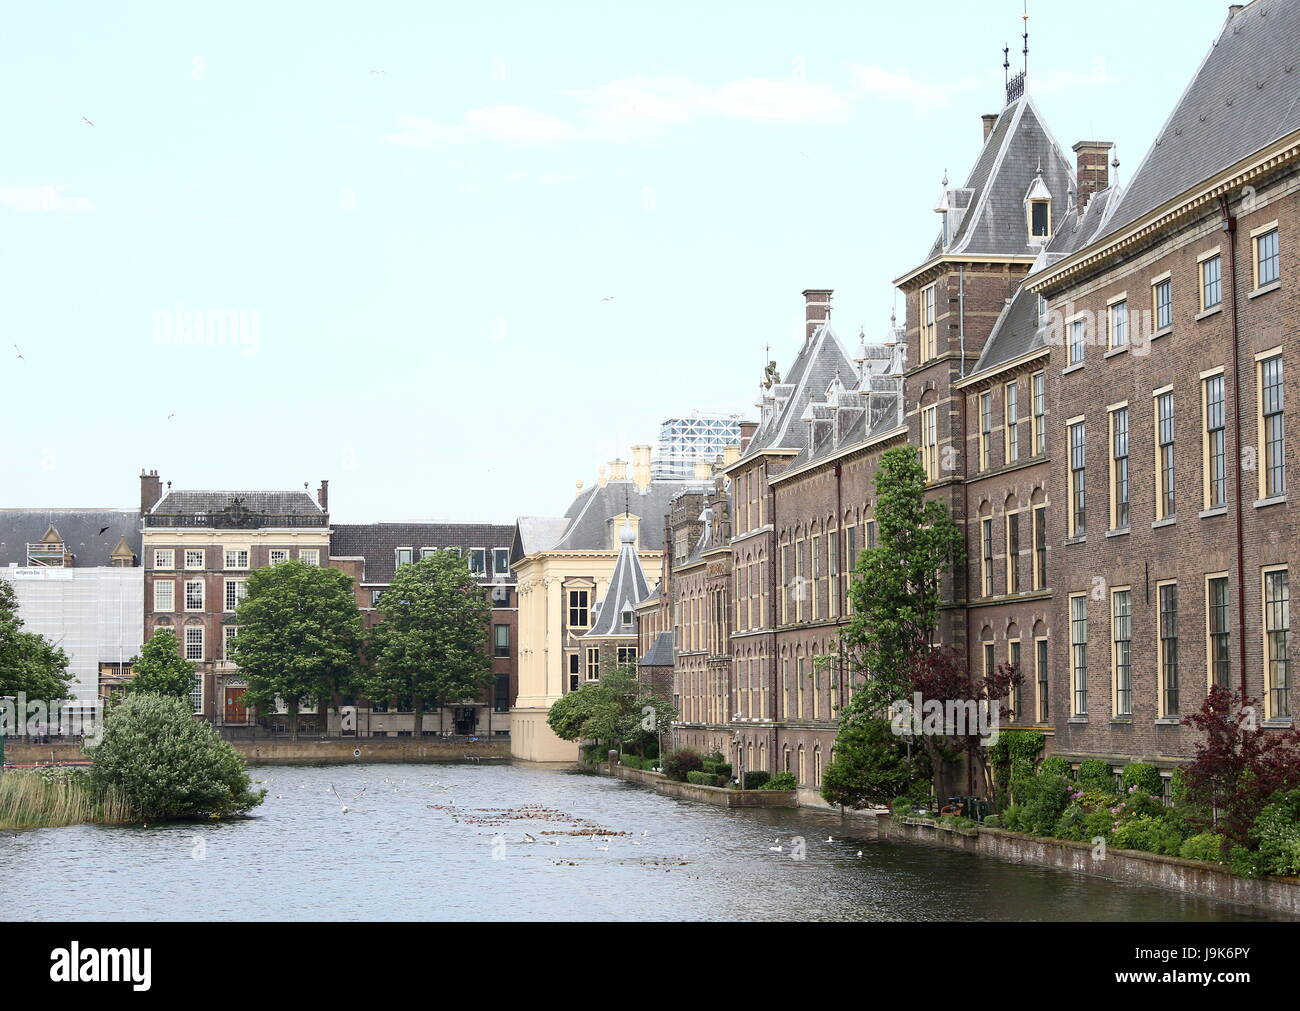 Buitenhof in Den Haag (Den Haag), Niederlande. Hofvijver Teich. Binnenhof, Sitz der niederländischen Parlament und Regierung Stockfoto